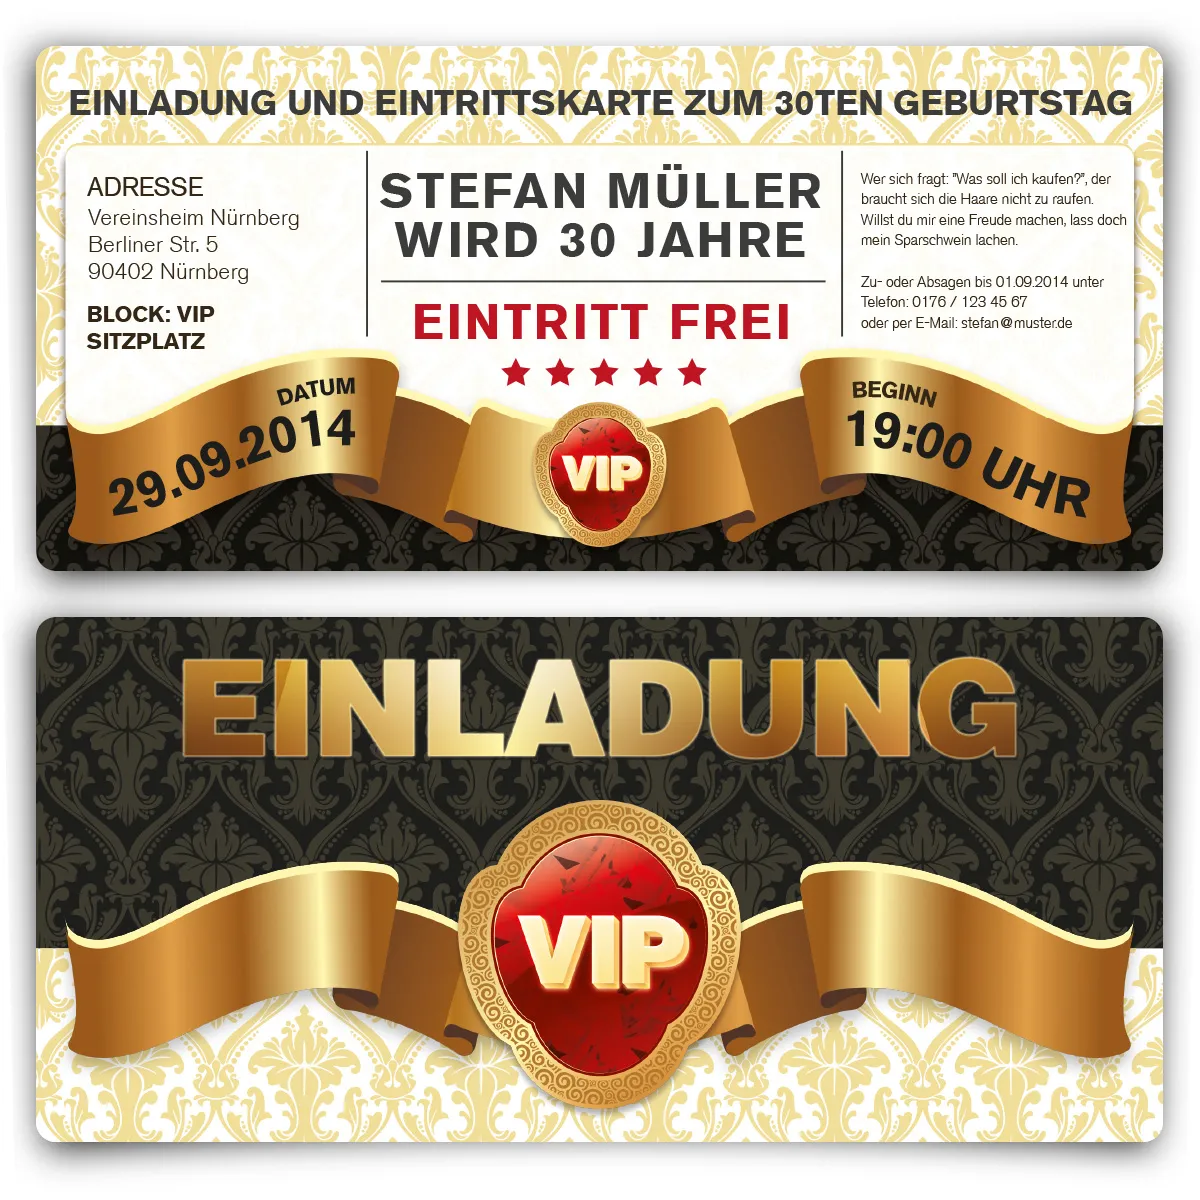 Einladung als Eintrittskarte - VIP